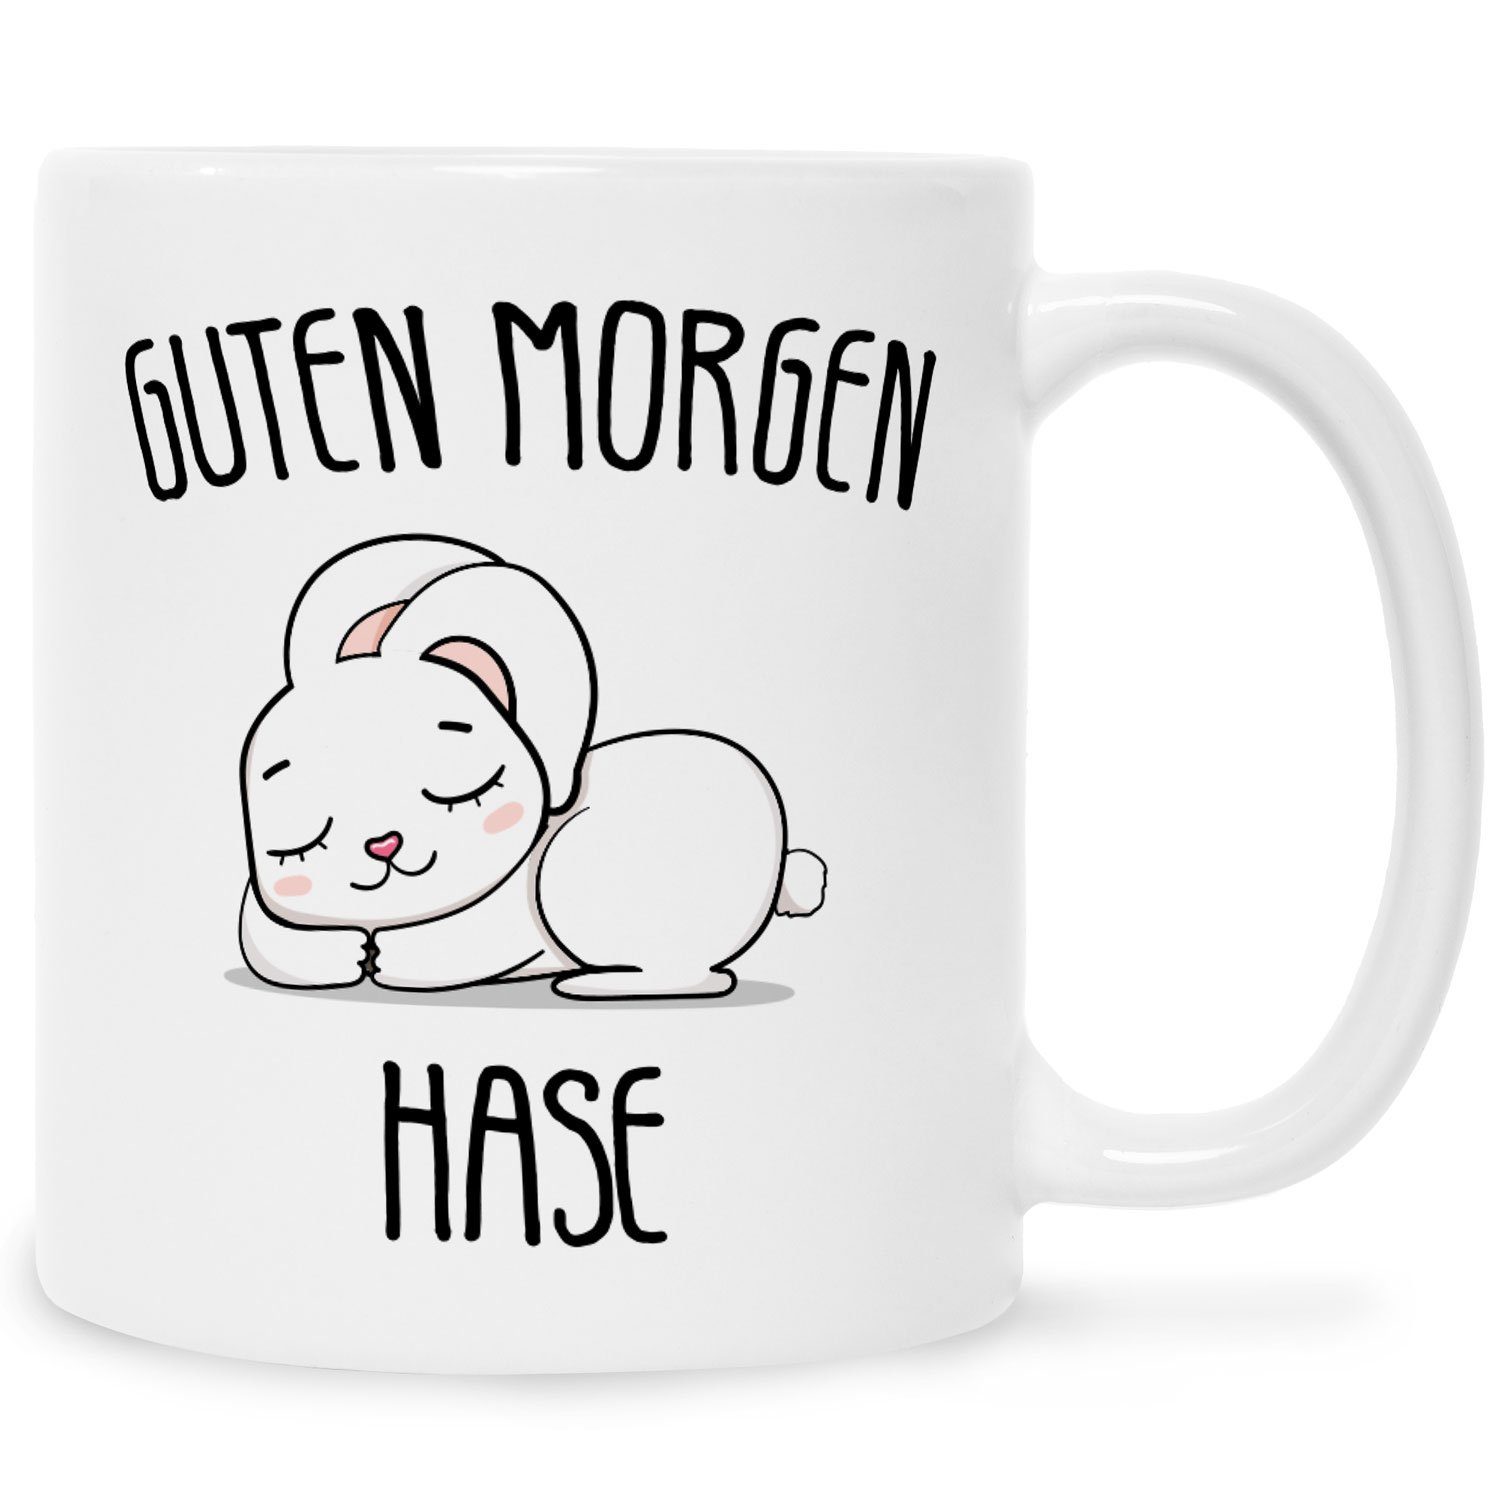 GRAVURZEILE Tasse Bedruckte Tasse mit Motiv - Guten Morgen Hase, Keramik, Tasse mit niedlichem Häschenen Kaninchen für Sie & Ihn Weiß